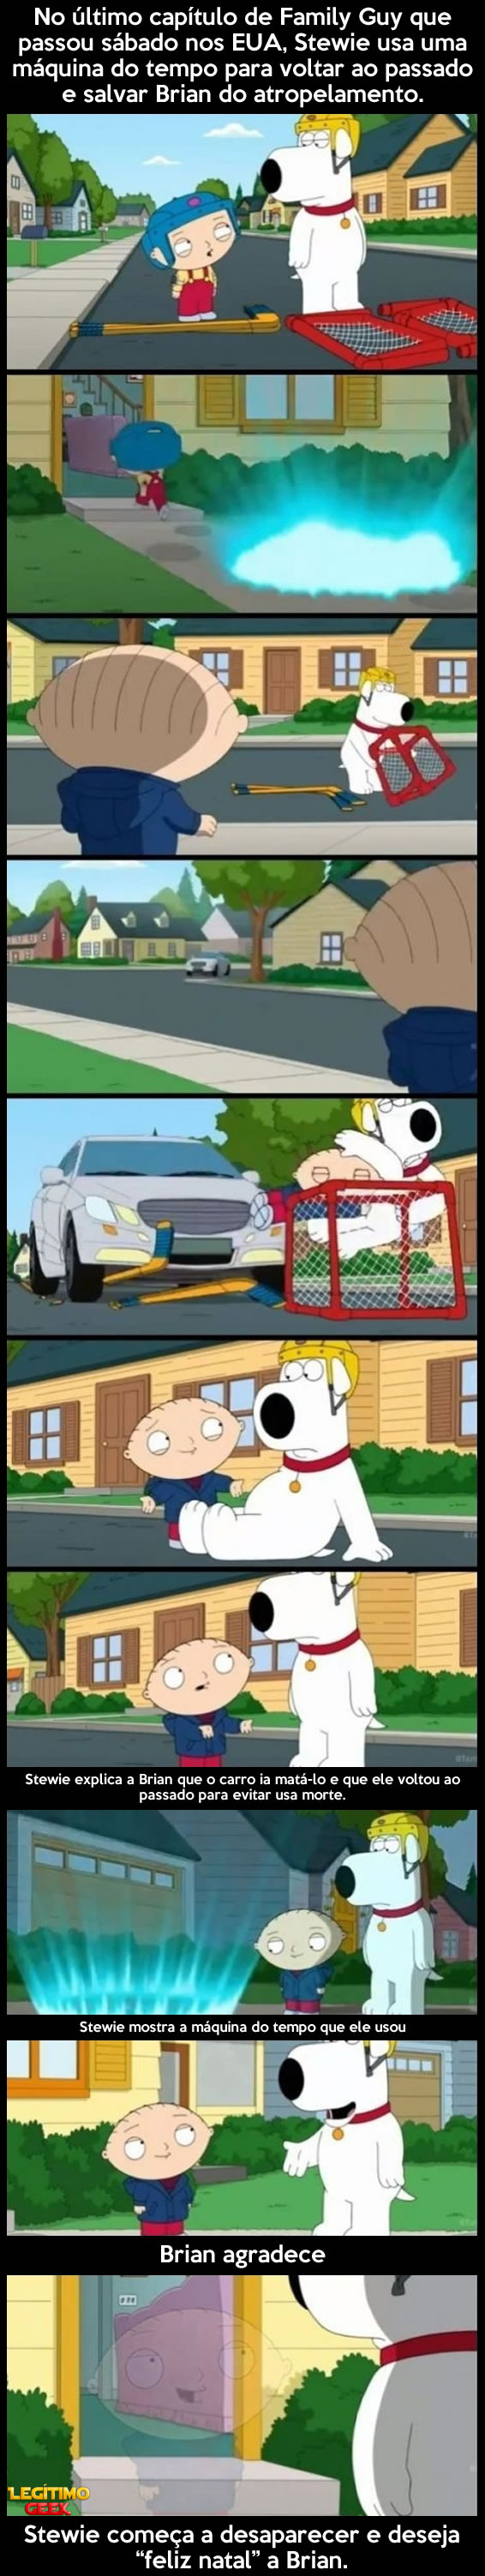 Stewie salva Brian da morte... - meme